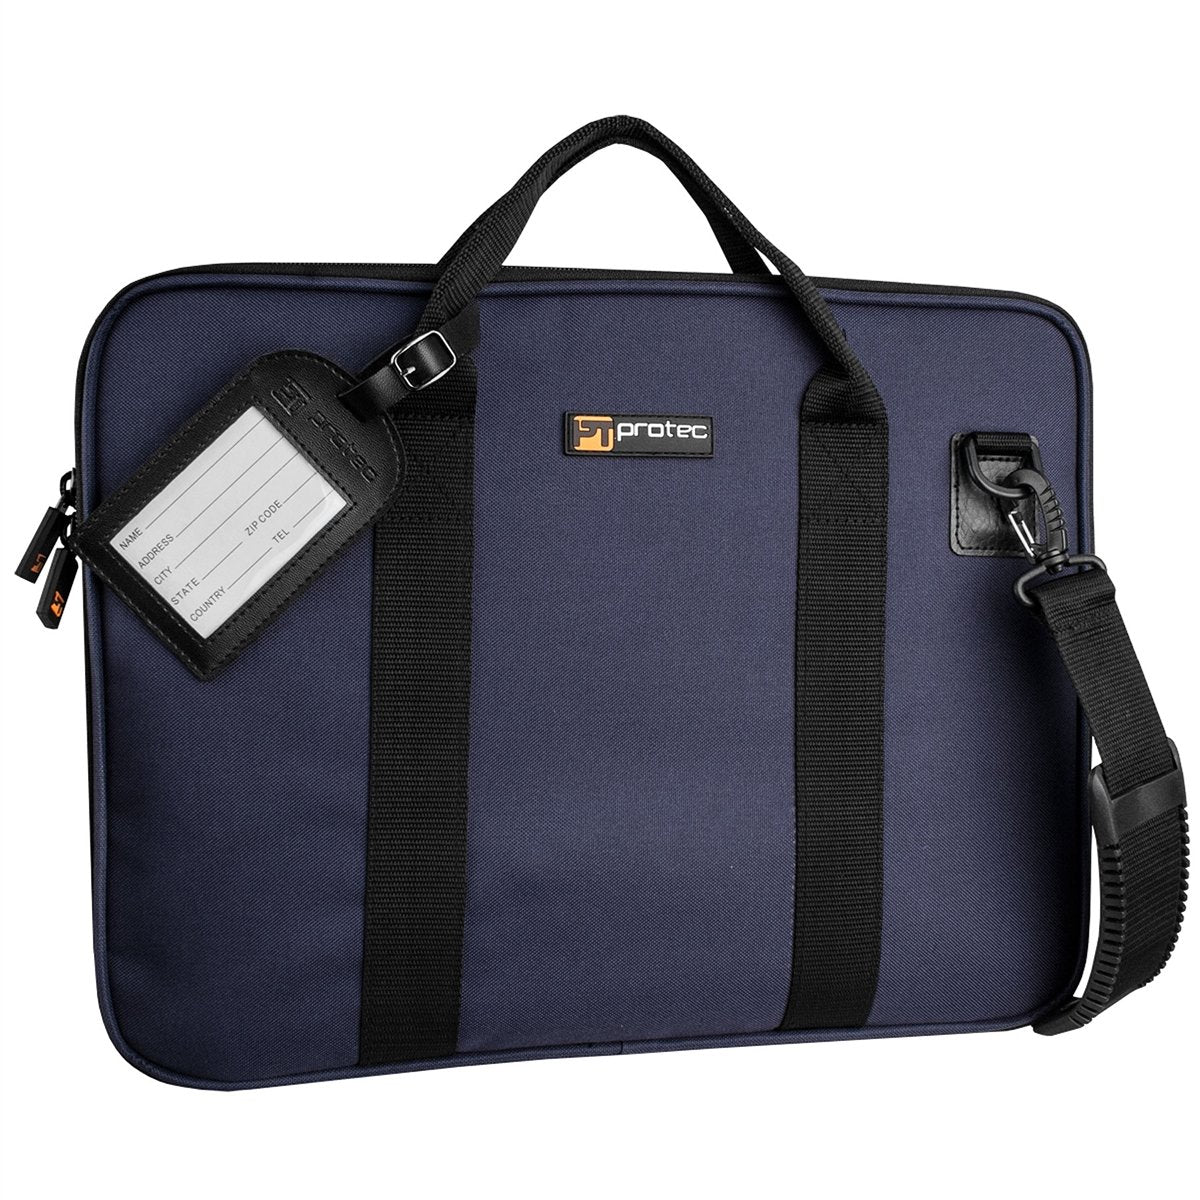 Protec - Slim Portfolio Bag-Accessories-Protec-Blue-Music Elements